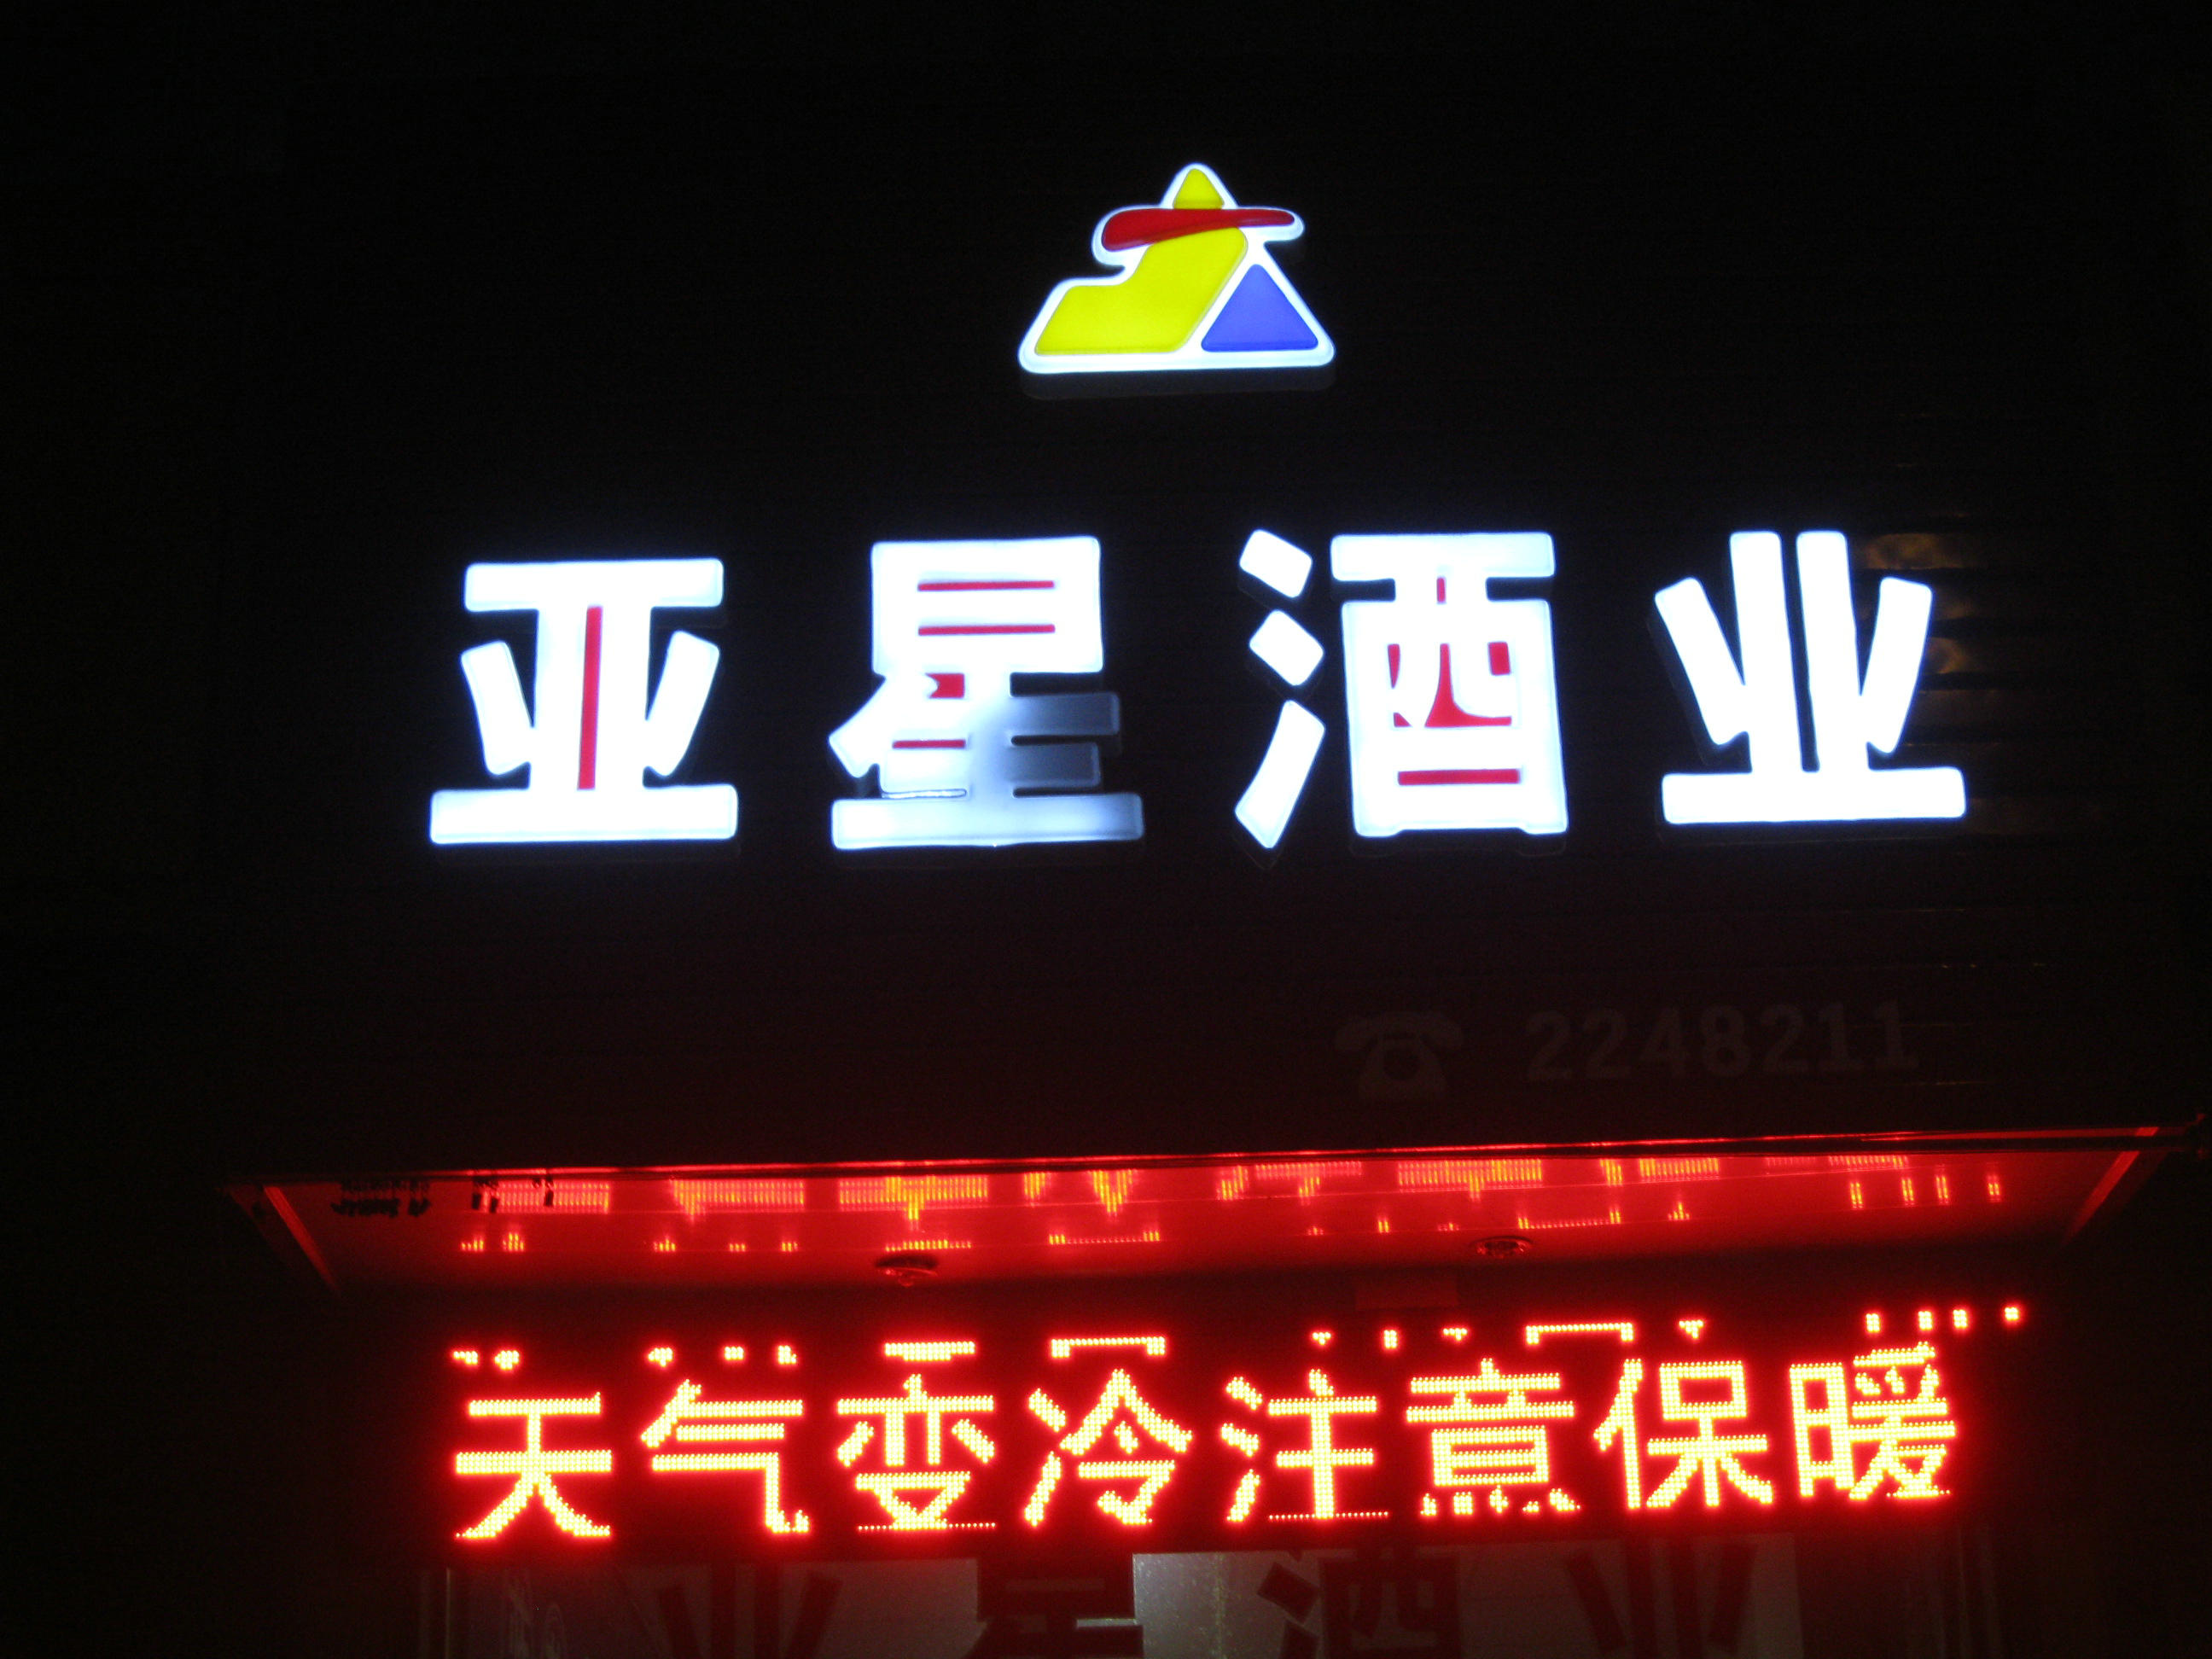 临洮亚星酒业